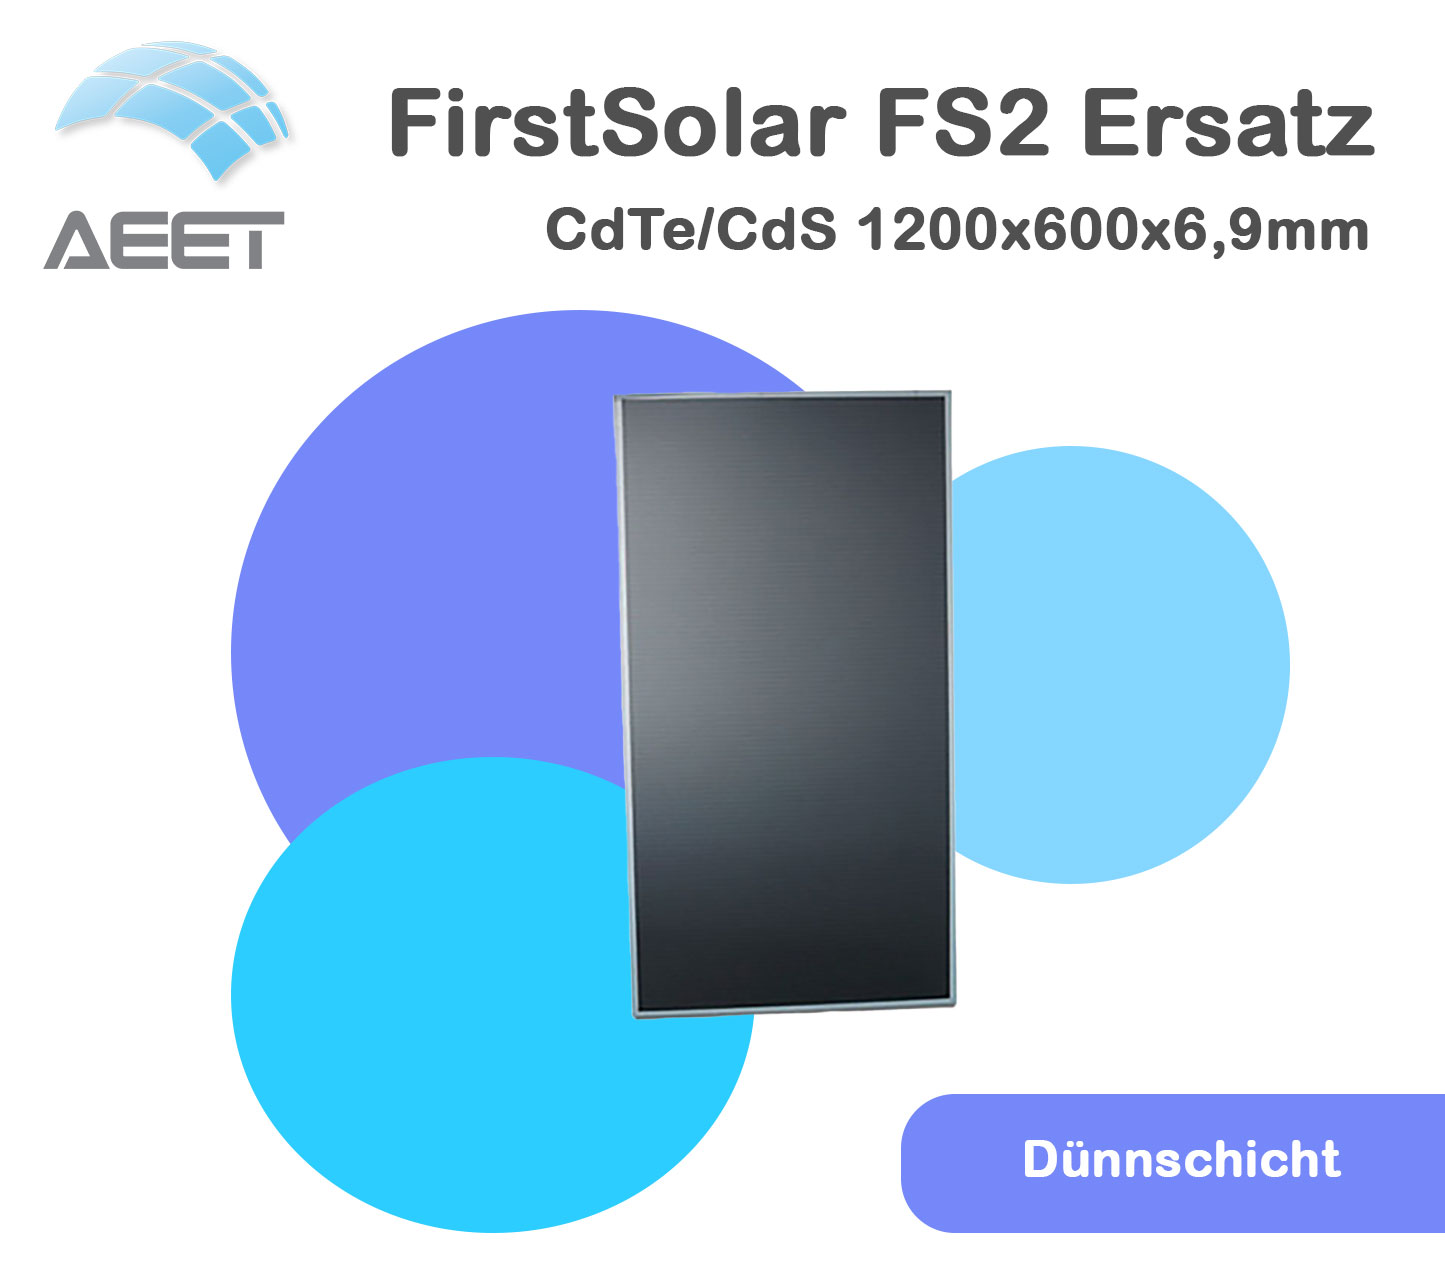 Solarmodule 1200x600x6,9mm Dünnschicht FirstSolar FS2 Ersatz